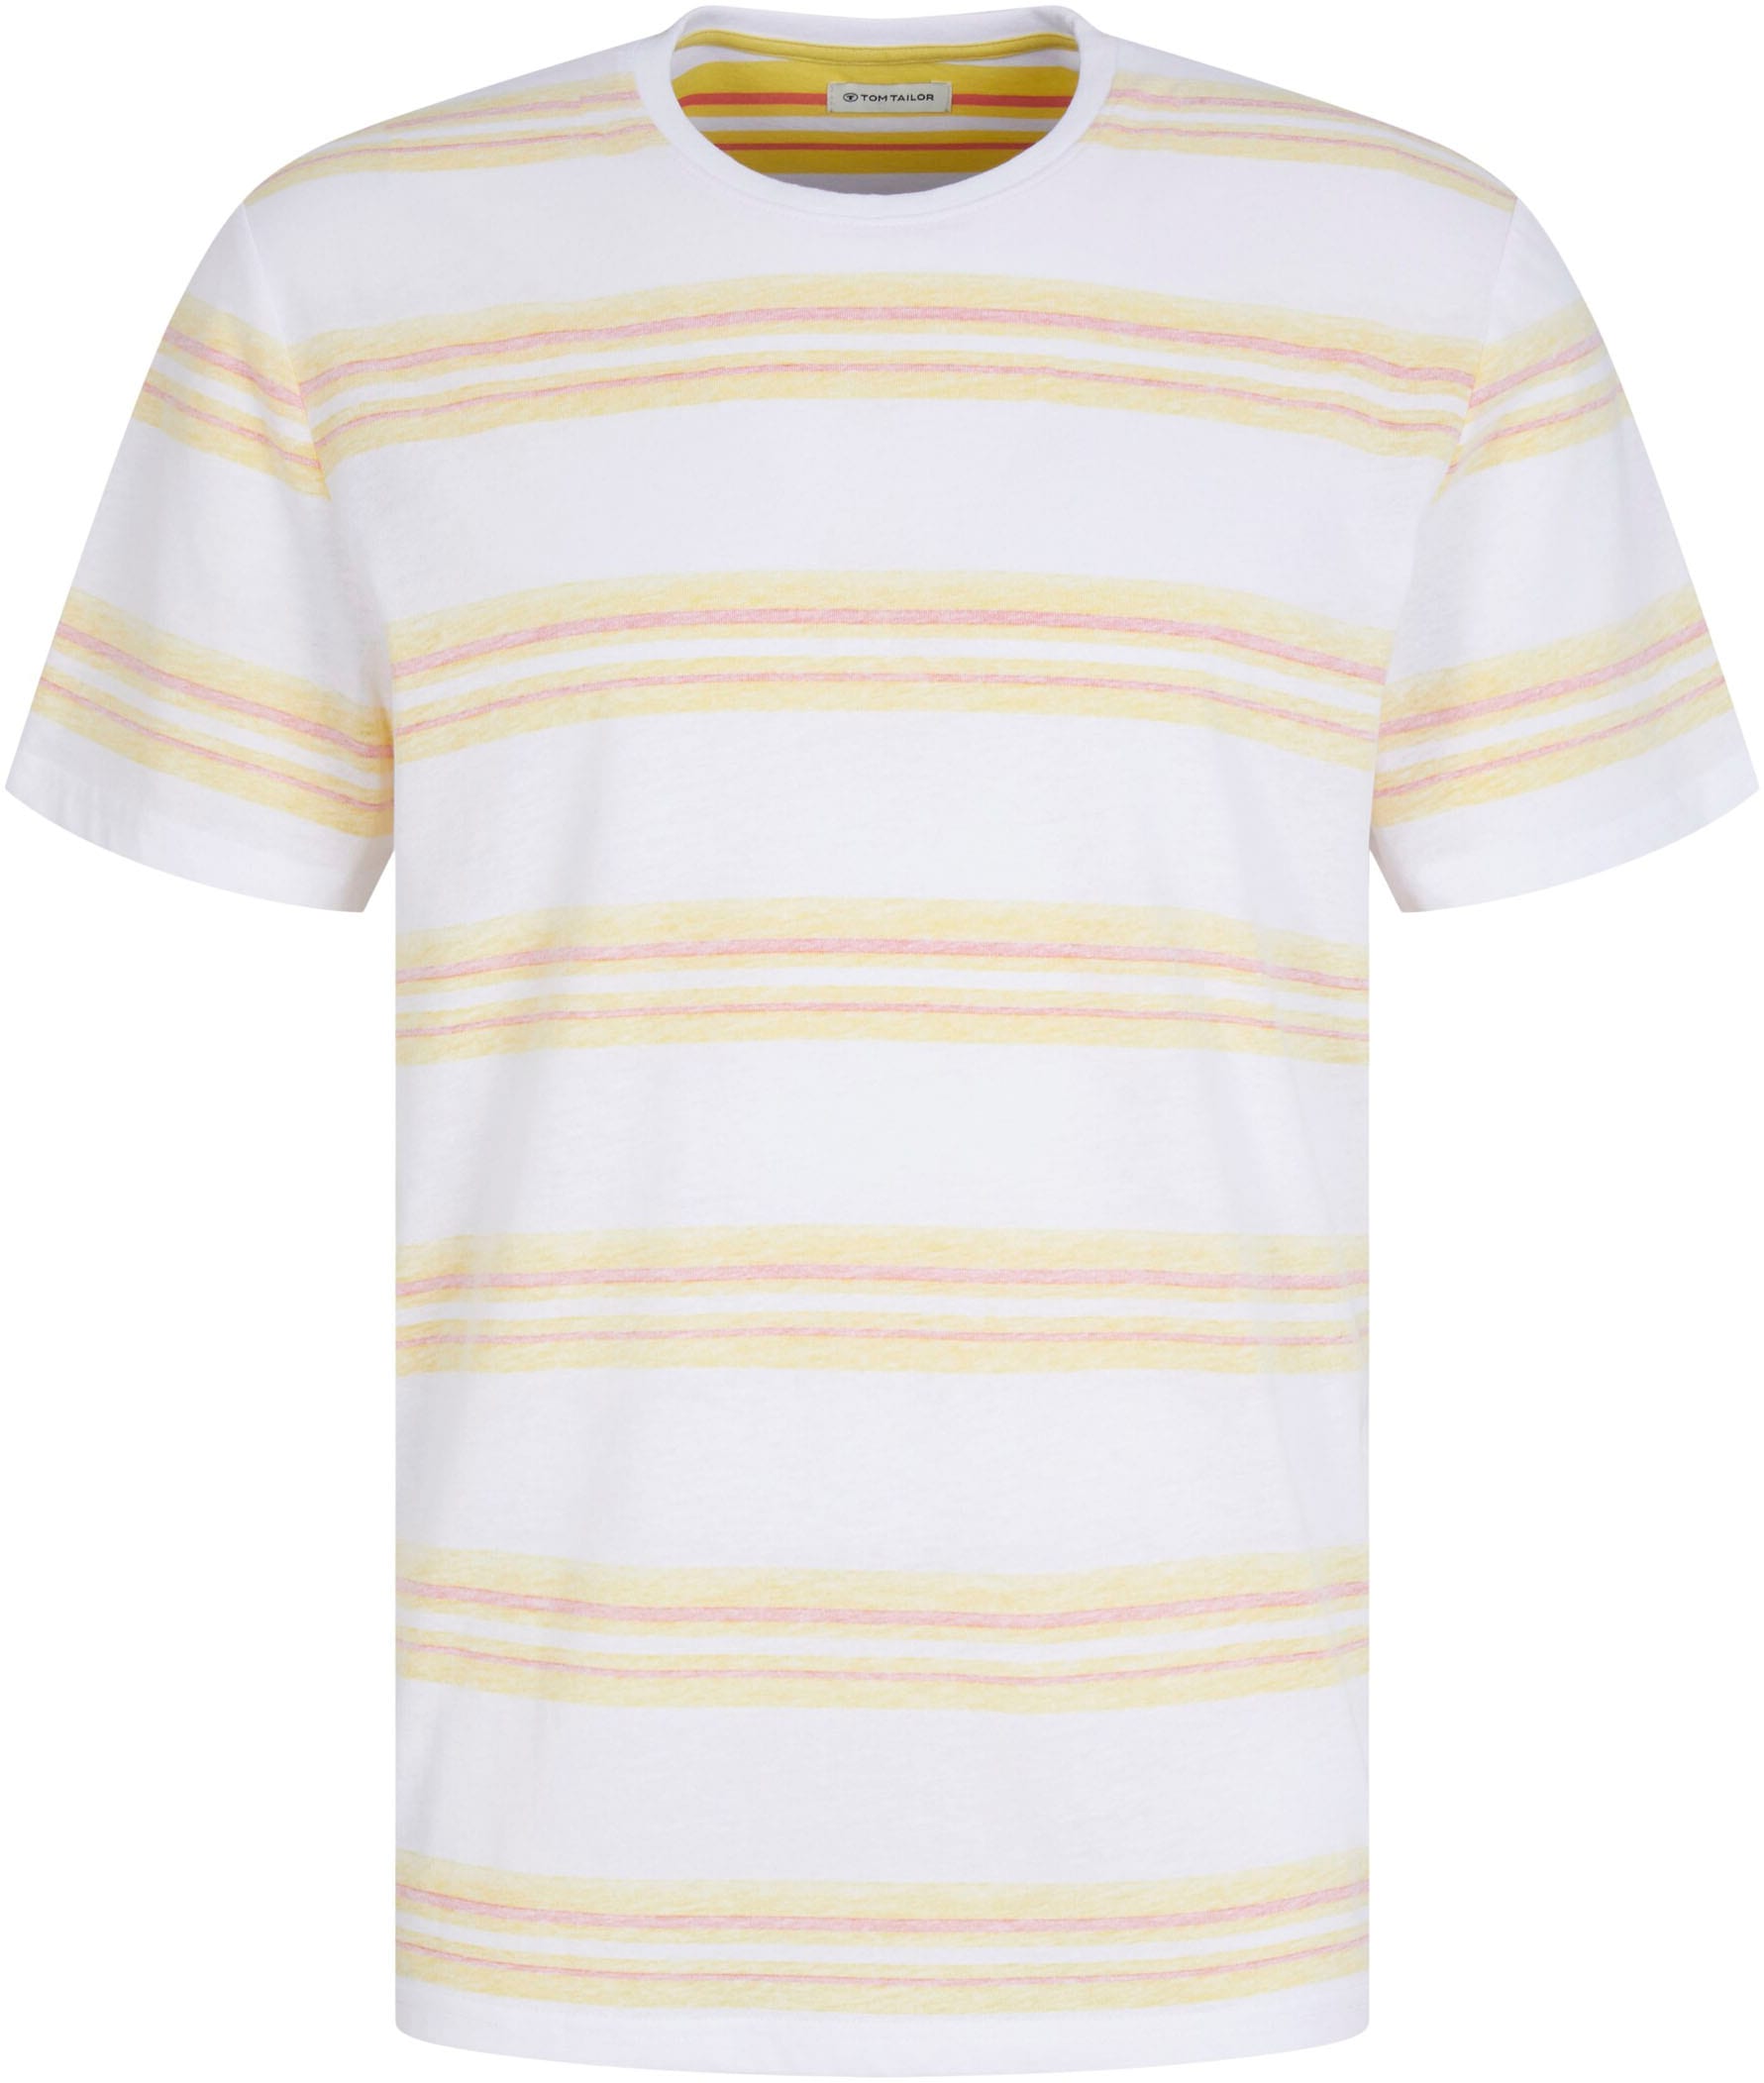 TOM TAILOR T-Shirt online kaufen OTTO bei